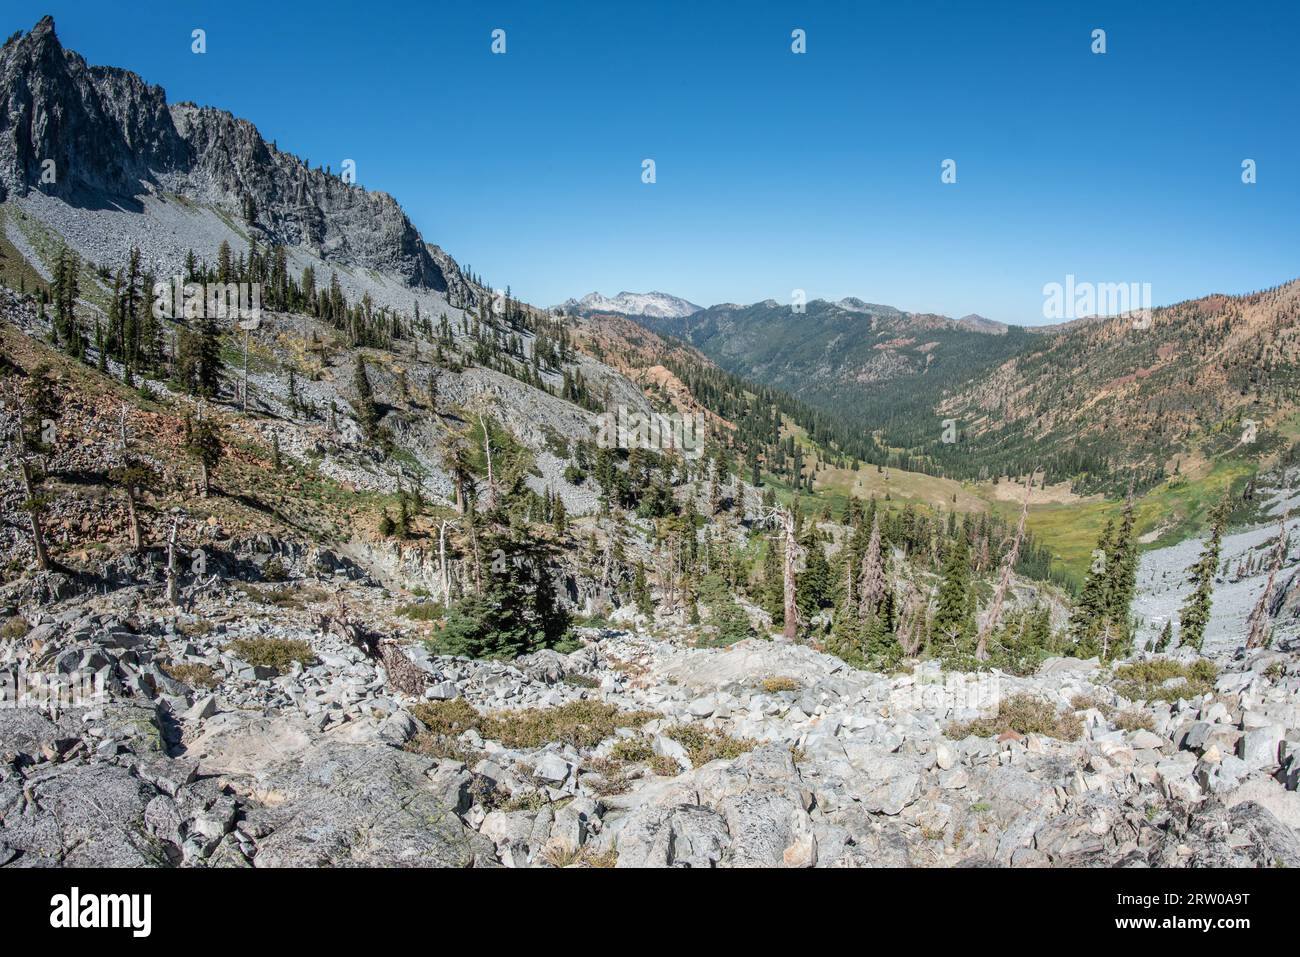 Lo splendido paesaggio e l'aspra natura selvaggia delle Trinity Alps nella California settentrionale, Stati Uniti. Foto Stock